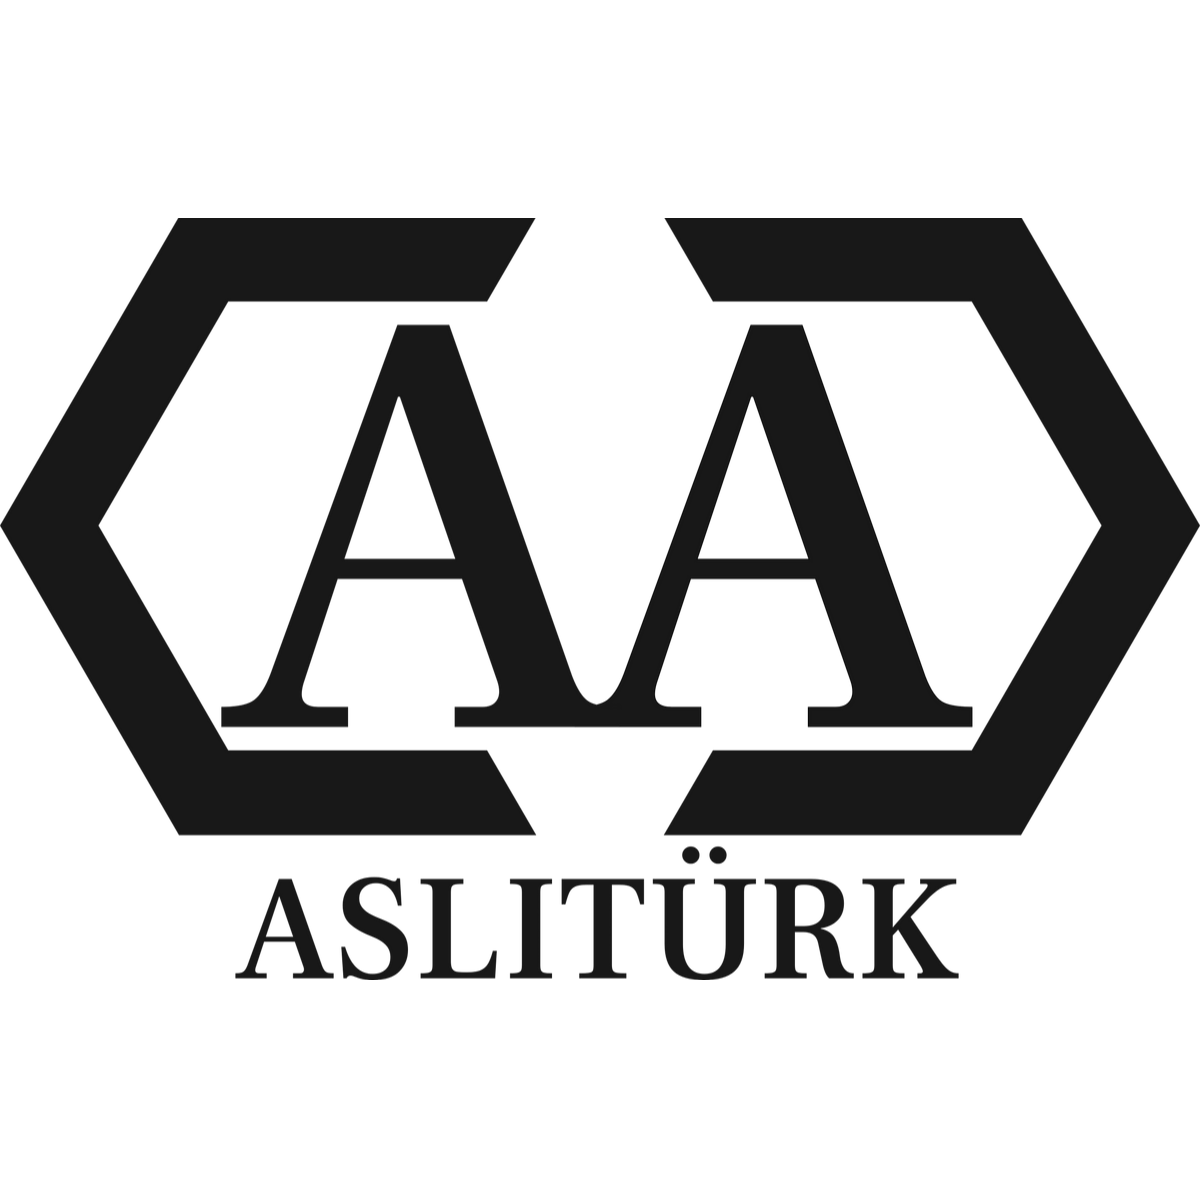 Ahmet Aslitürk Glas- & Büroreinigung Aslitürk  